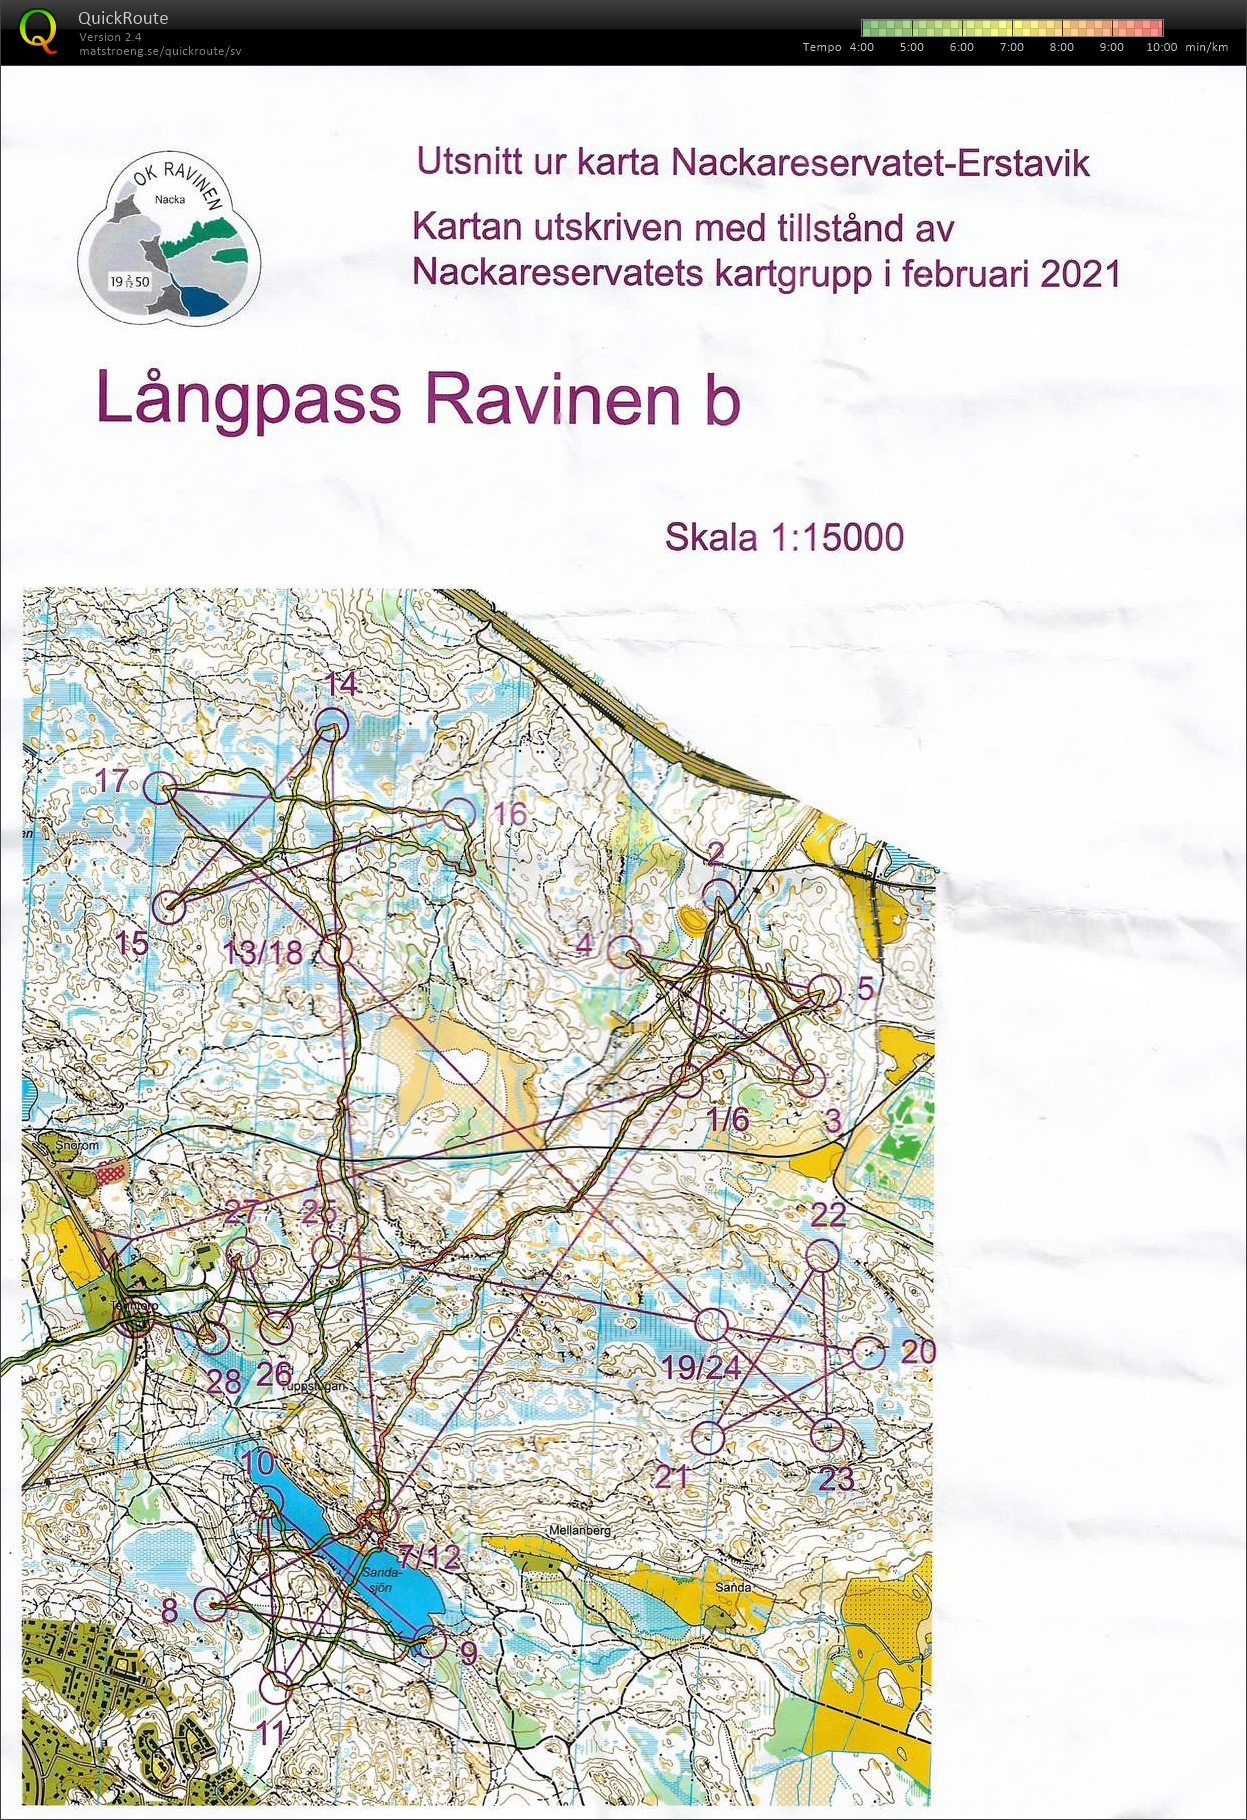 Långpass (20/02/2021)